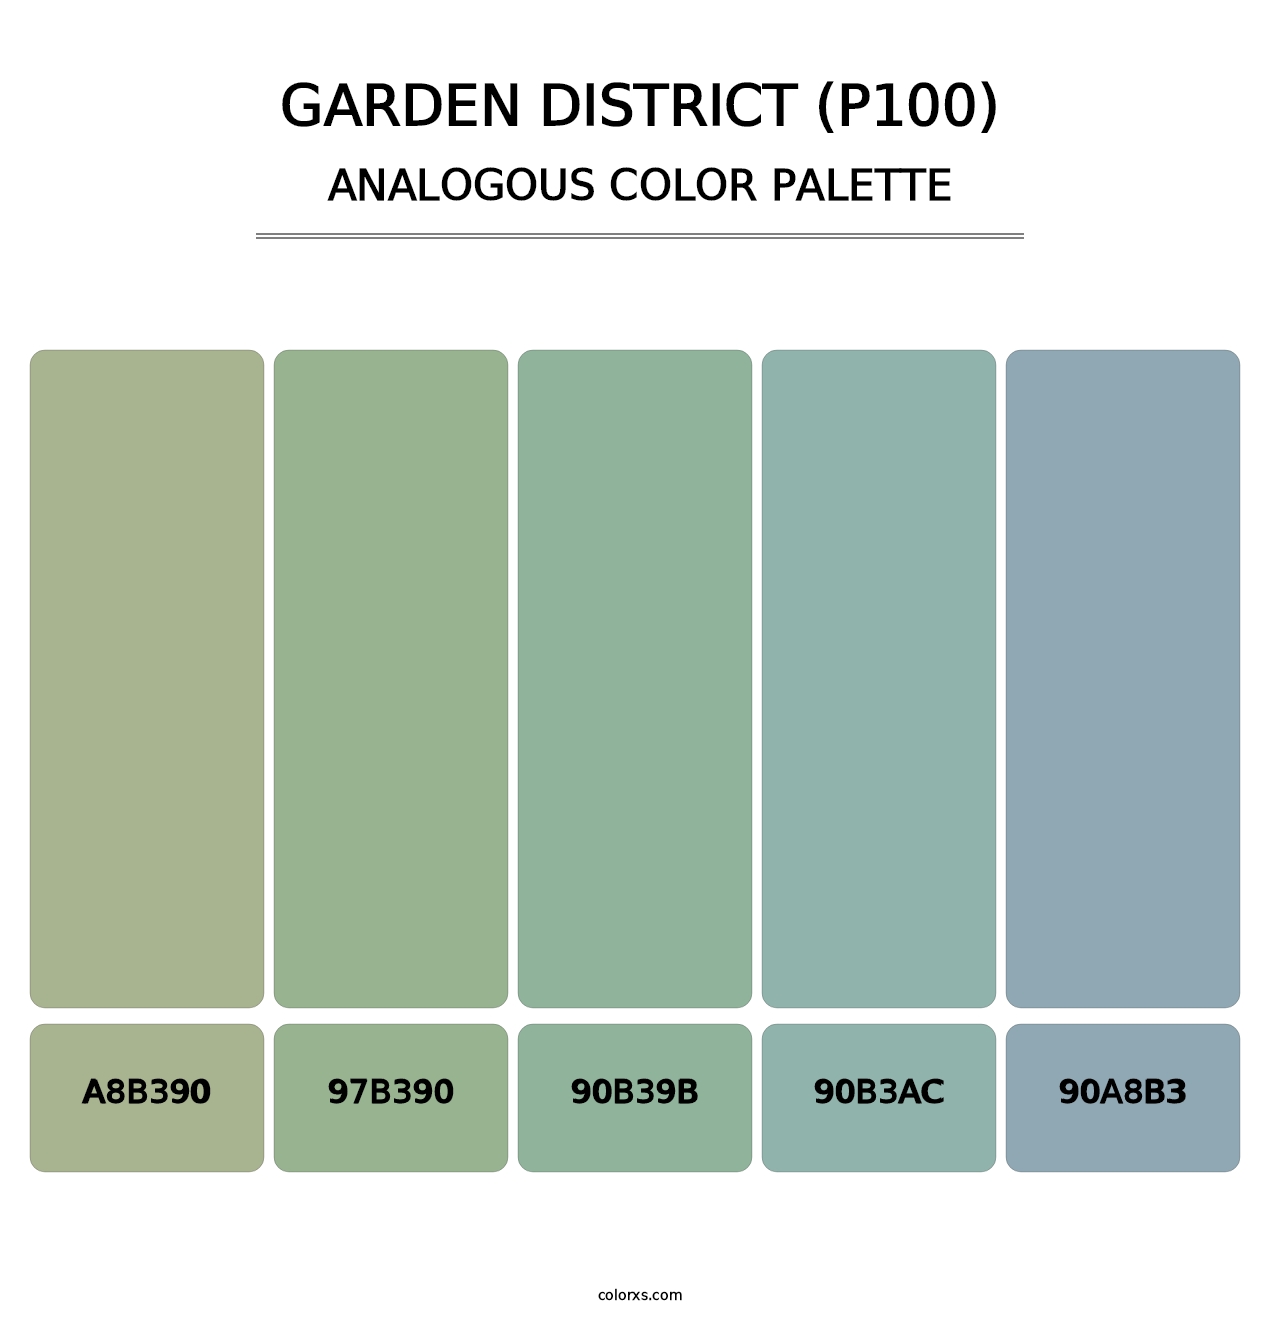 Garden District (P100) - Analogous Color Palette